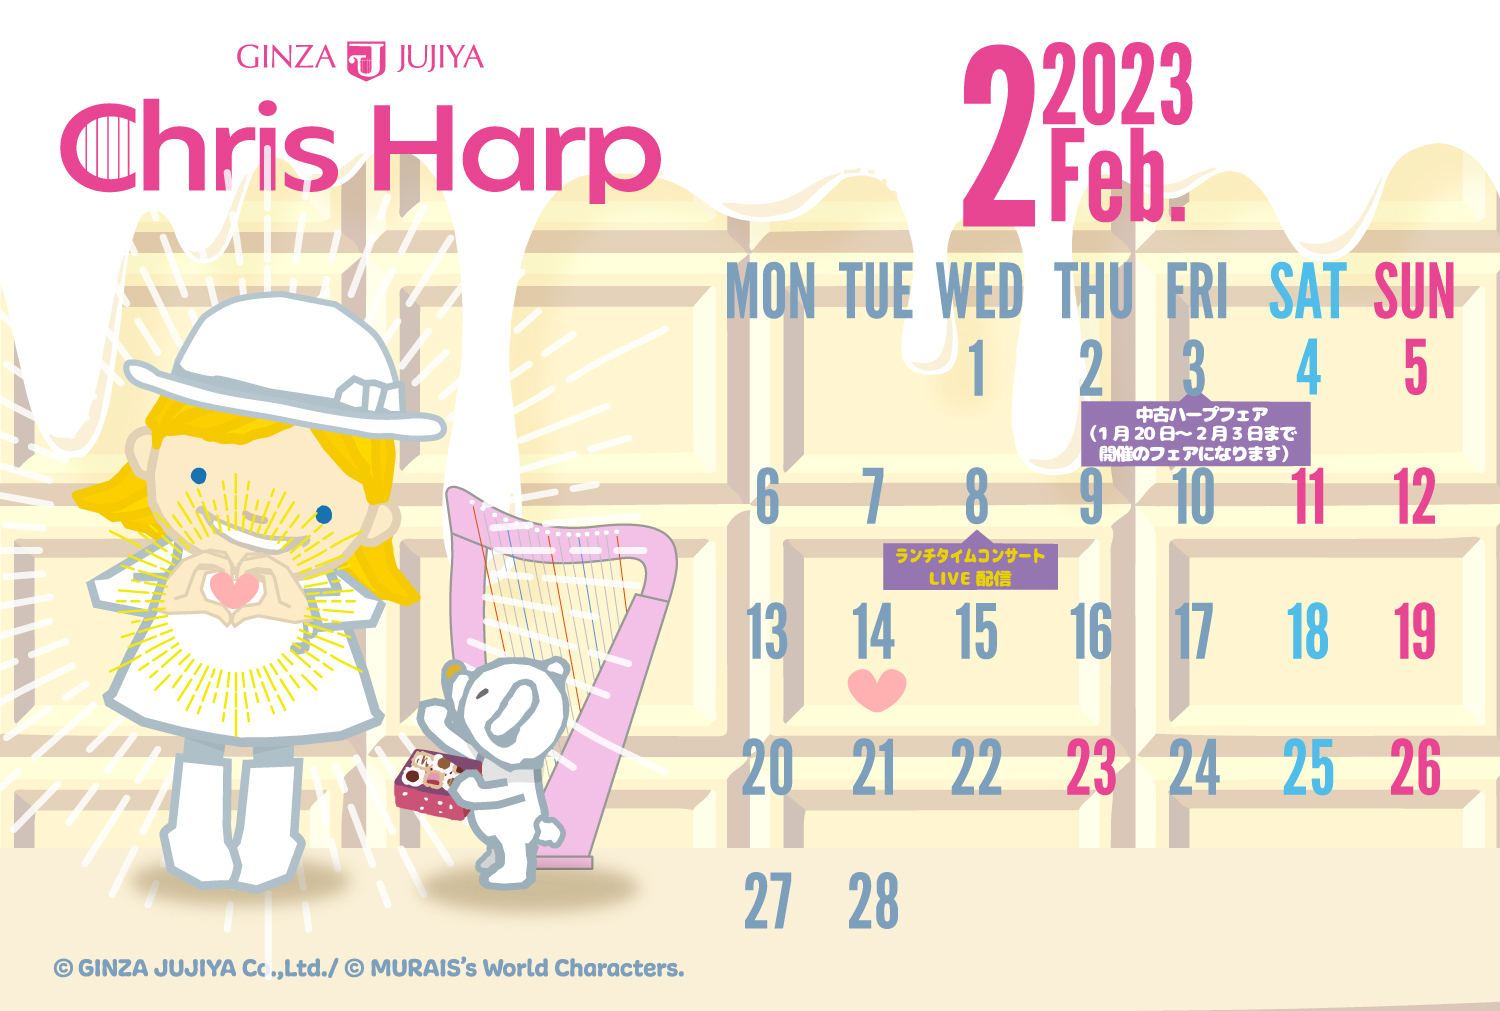 【プレゼント】クリスハープ 2023年2月オリジナルカレンダー壁紙